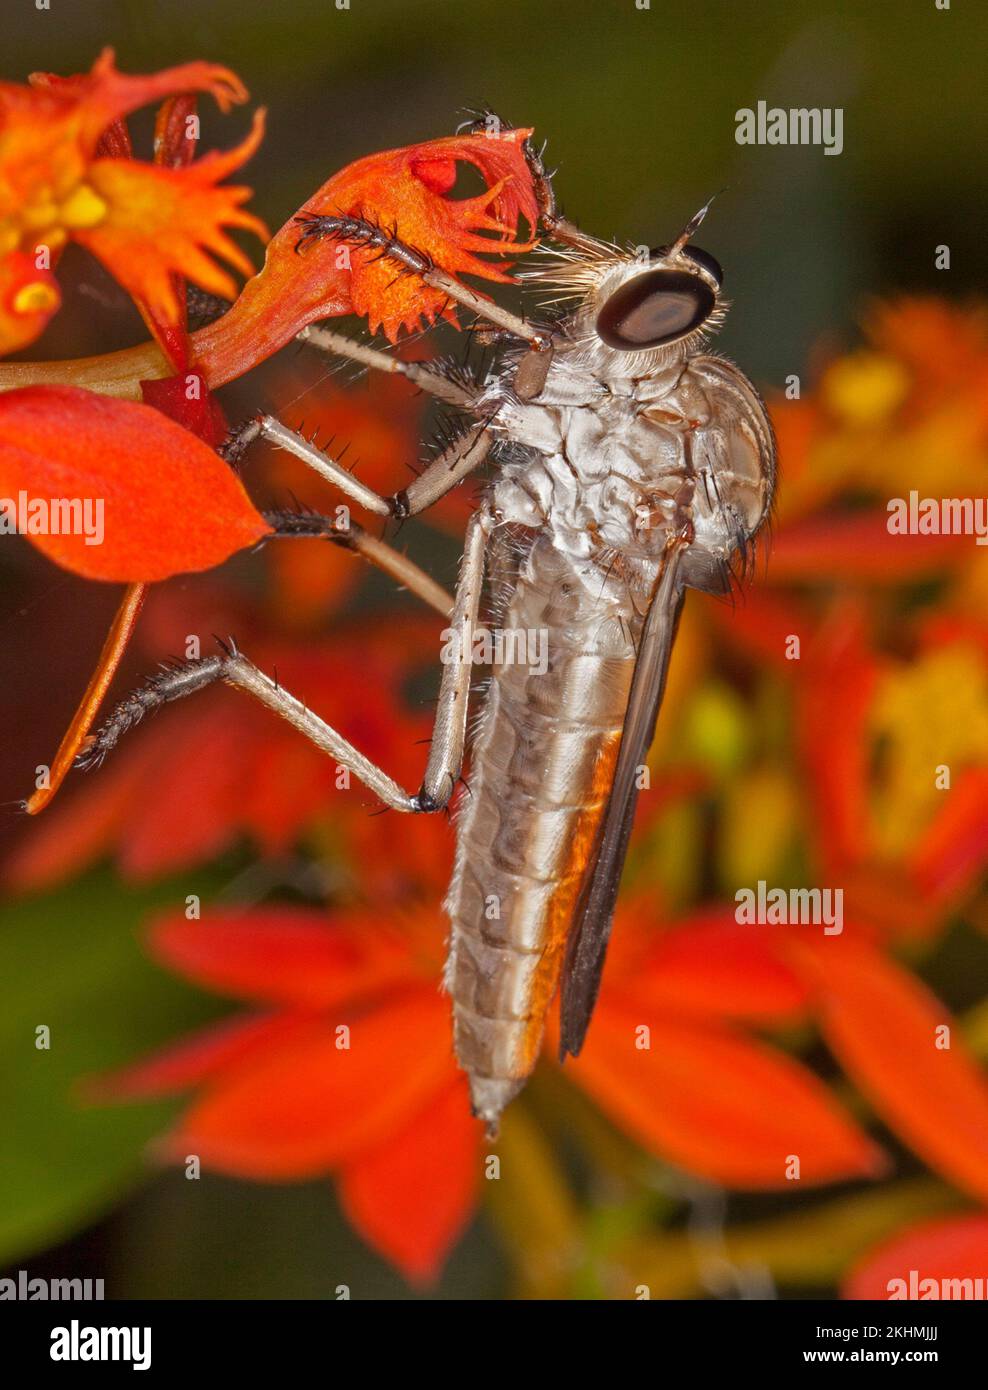 Mouche de voleur / d'assassin, famille Asilidae, un insecte prédateur bénéfique, sur la fleur rouge vif, avec de grands yeux clairement visibles, dans un jardin australien, Banque D'Images